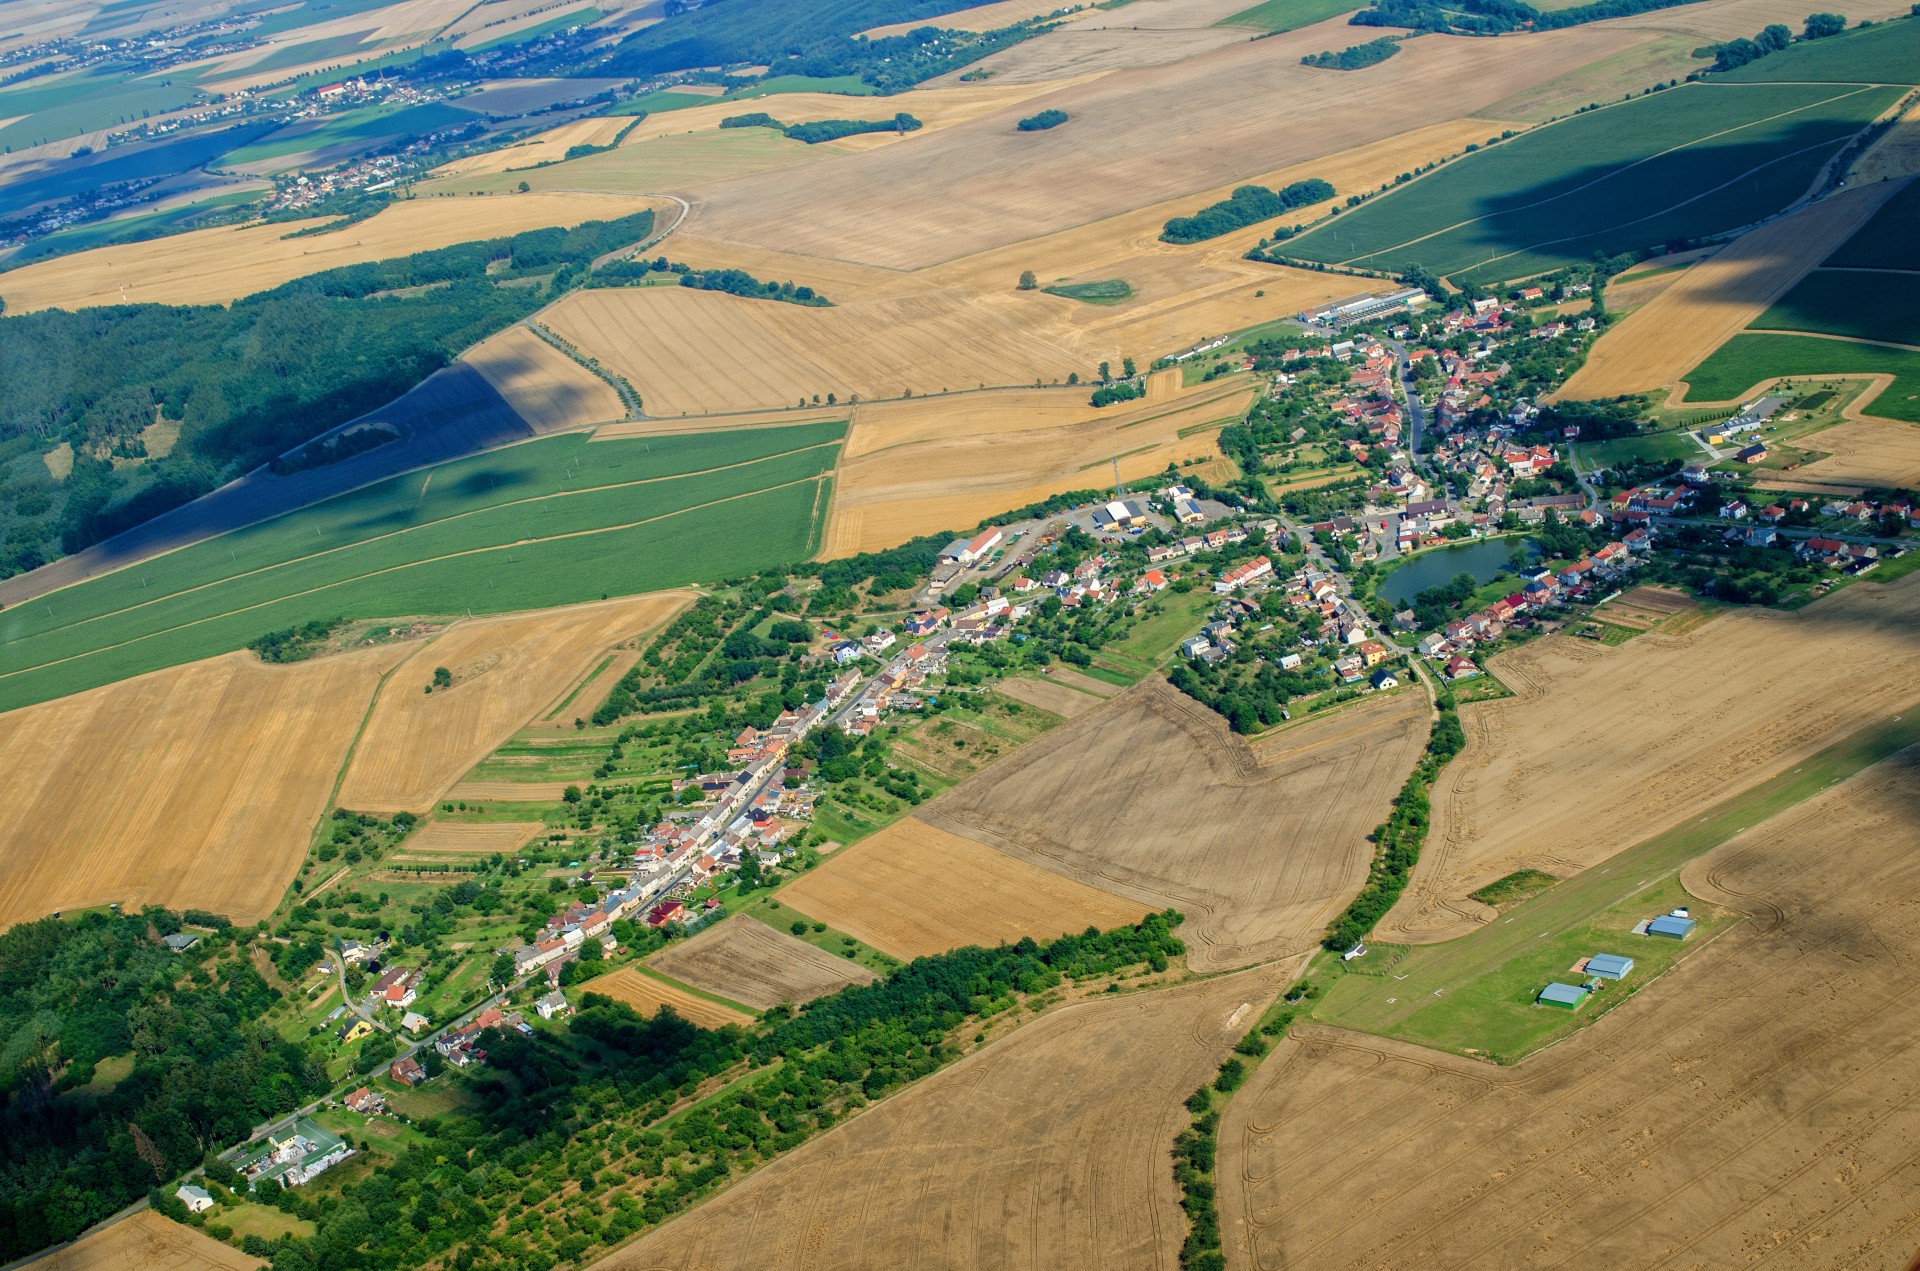 Luftbild mit Dorf und Ackerflächen